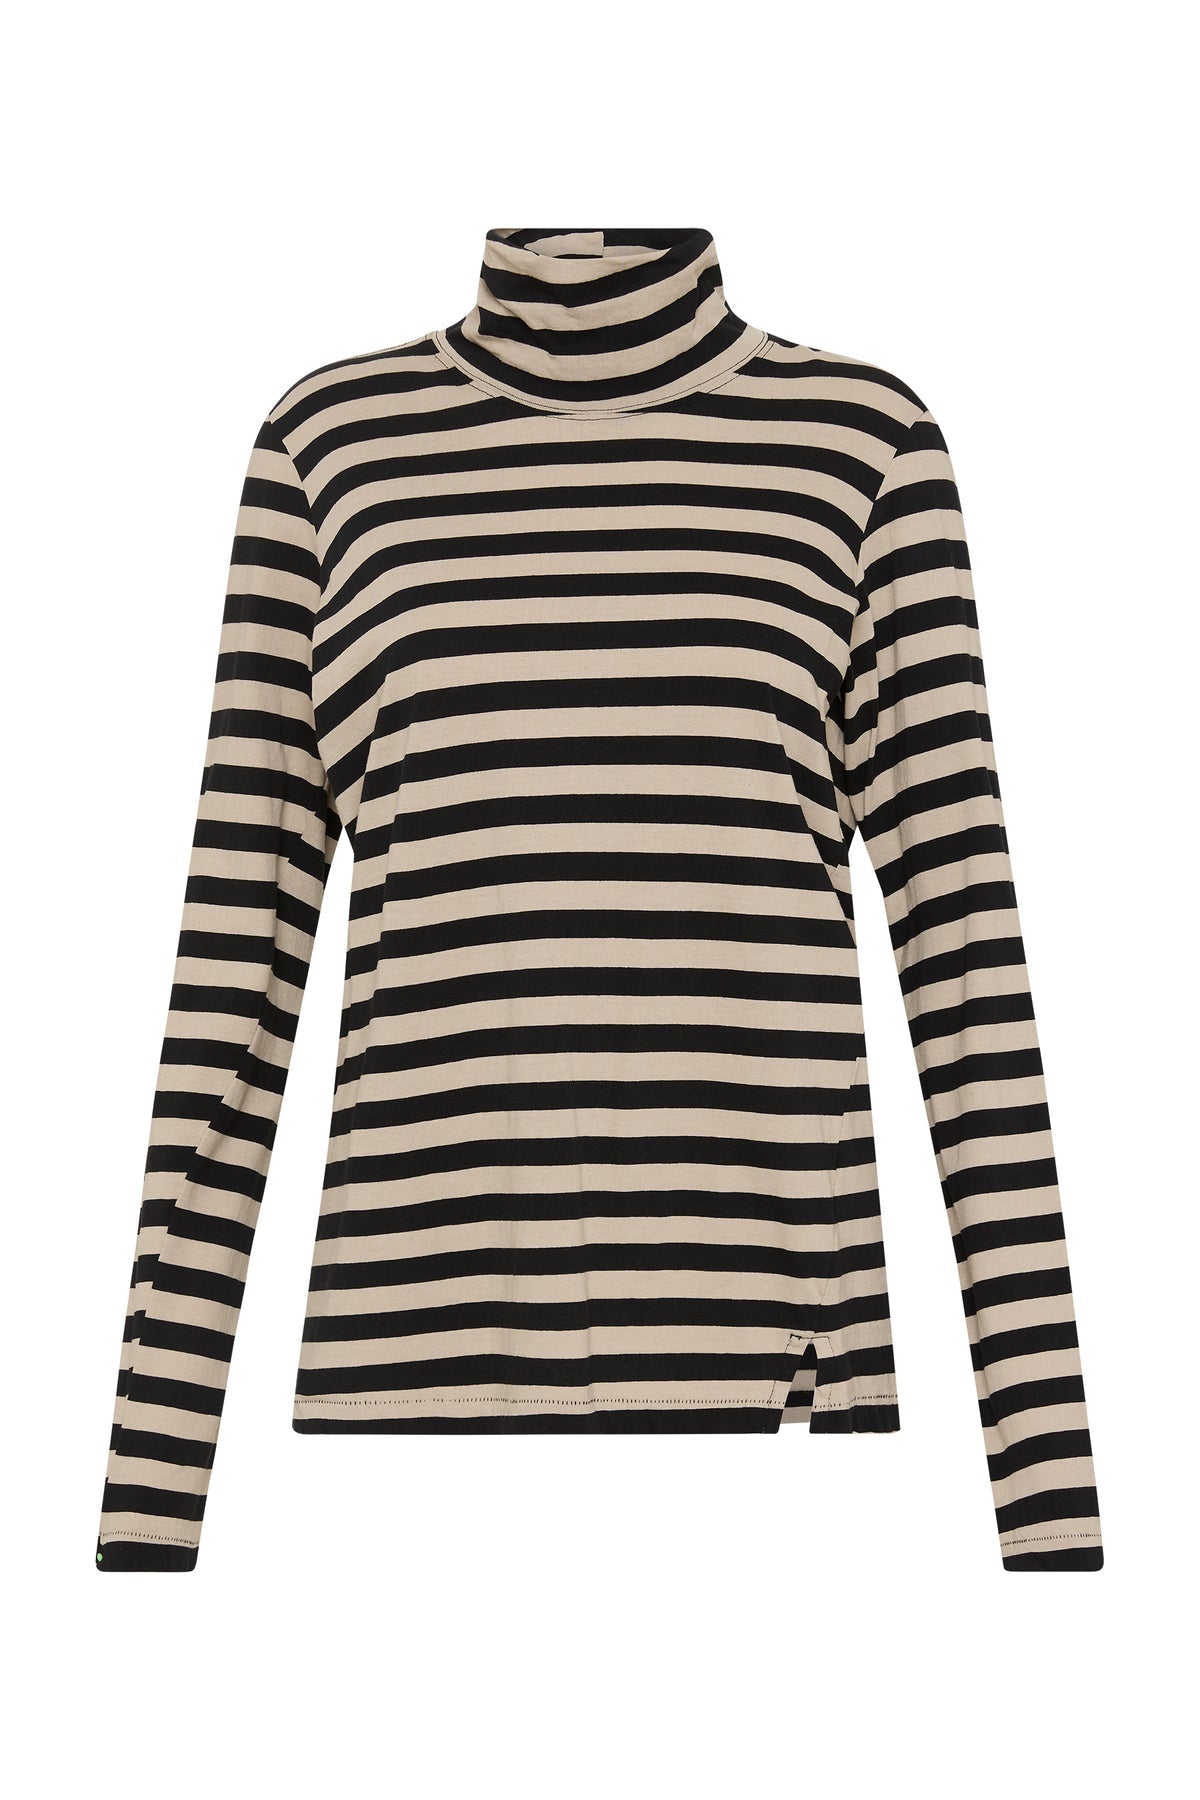 Stripe Funnel Neck Long Sleeve T-shirt in Black Oatmeal by Bassike